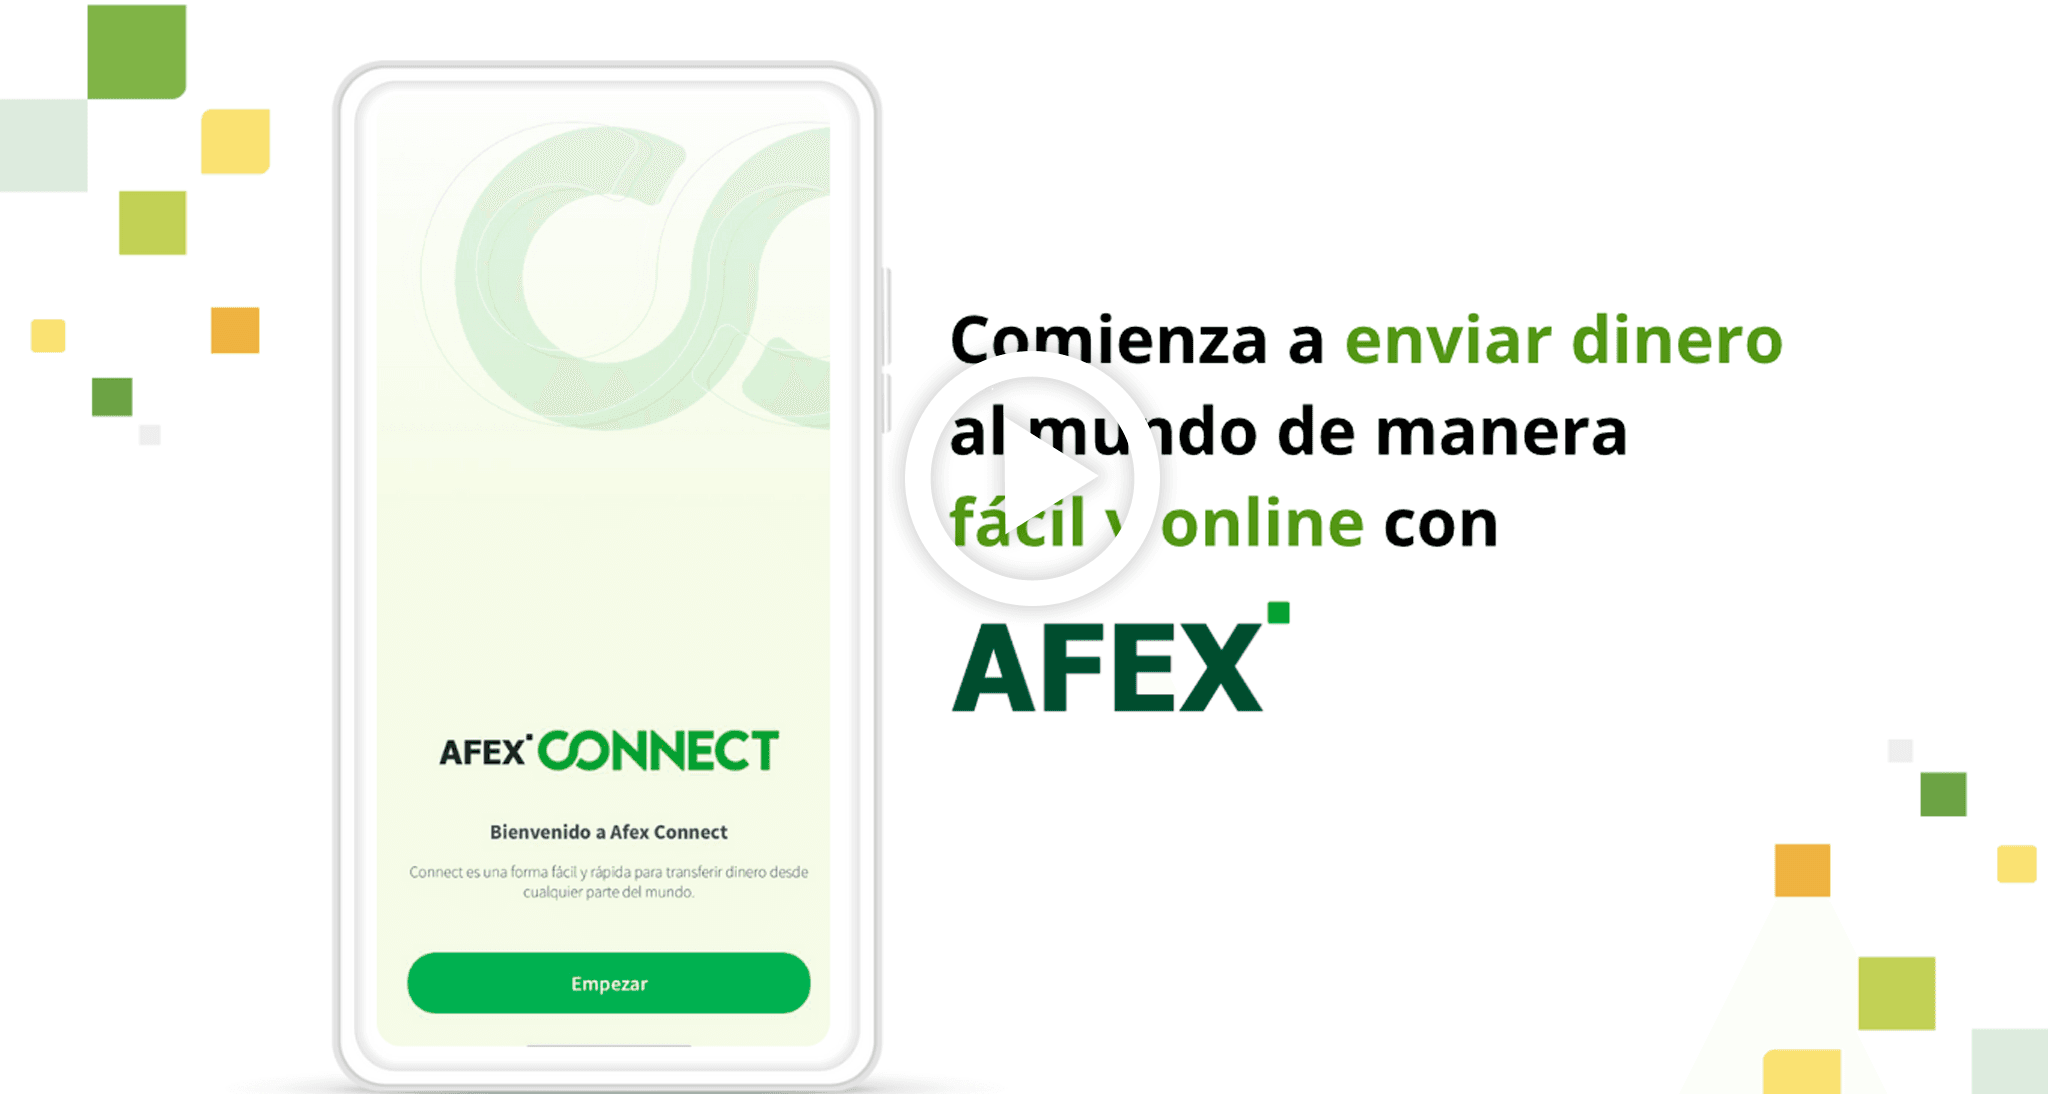 Portada de video tutorial de cómo registrarse Afex Connect